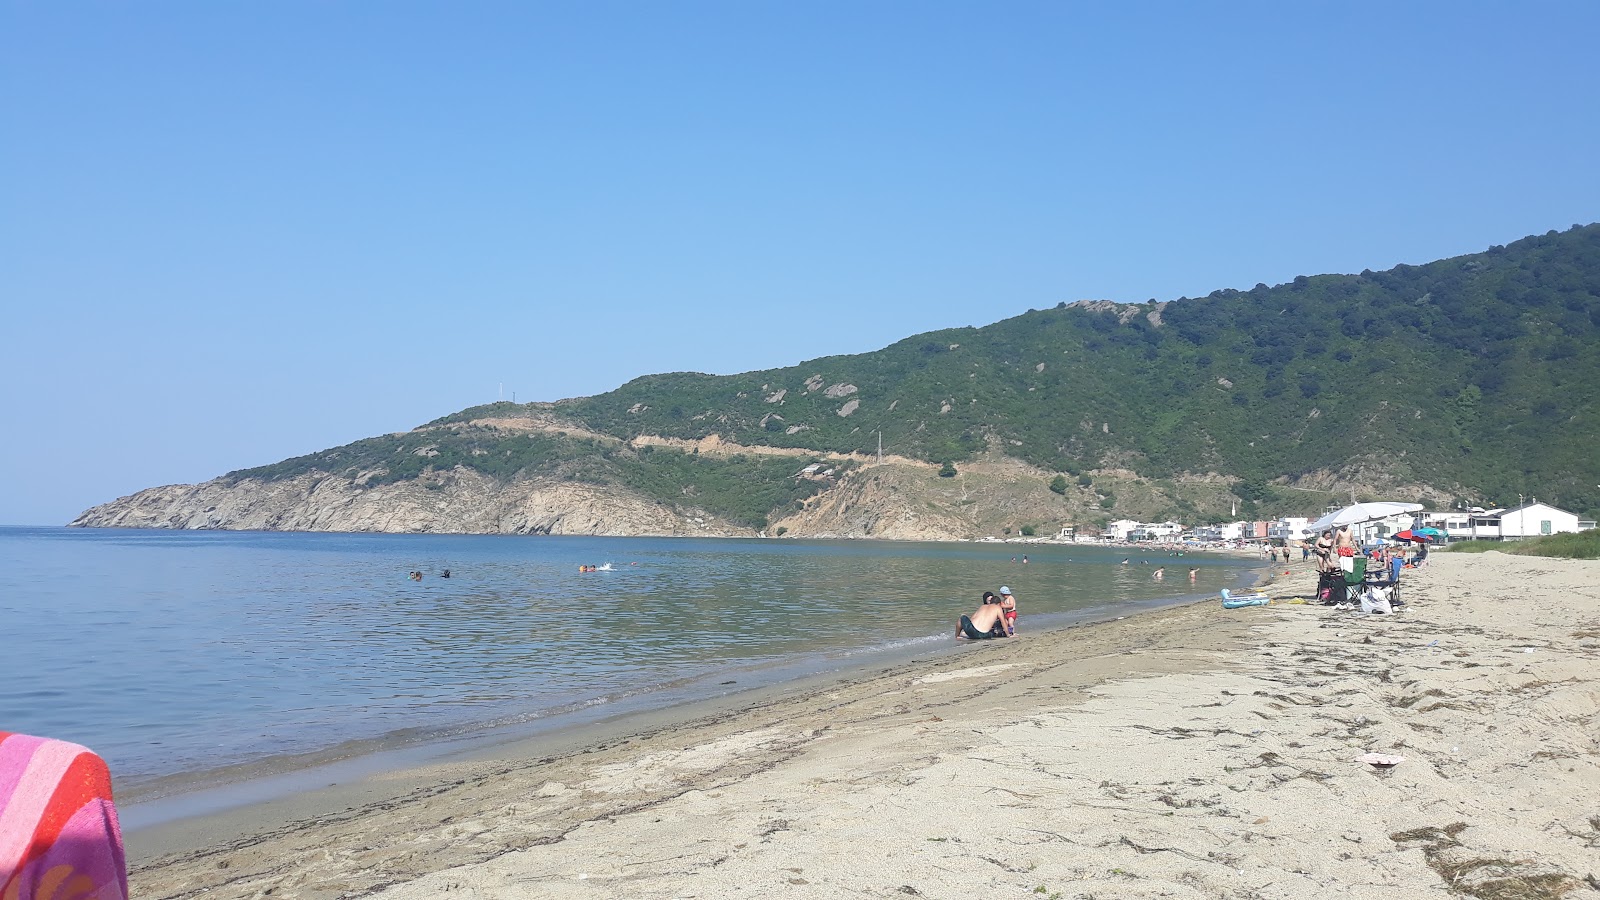 Ormanli beach的照片 便利设施区域